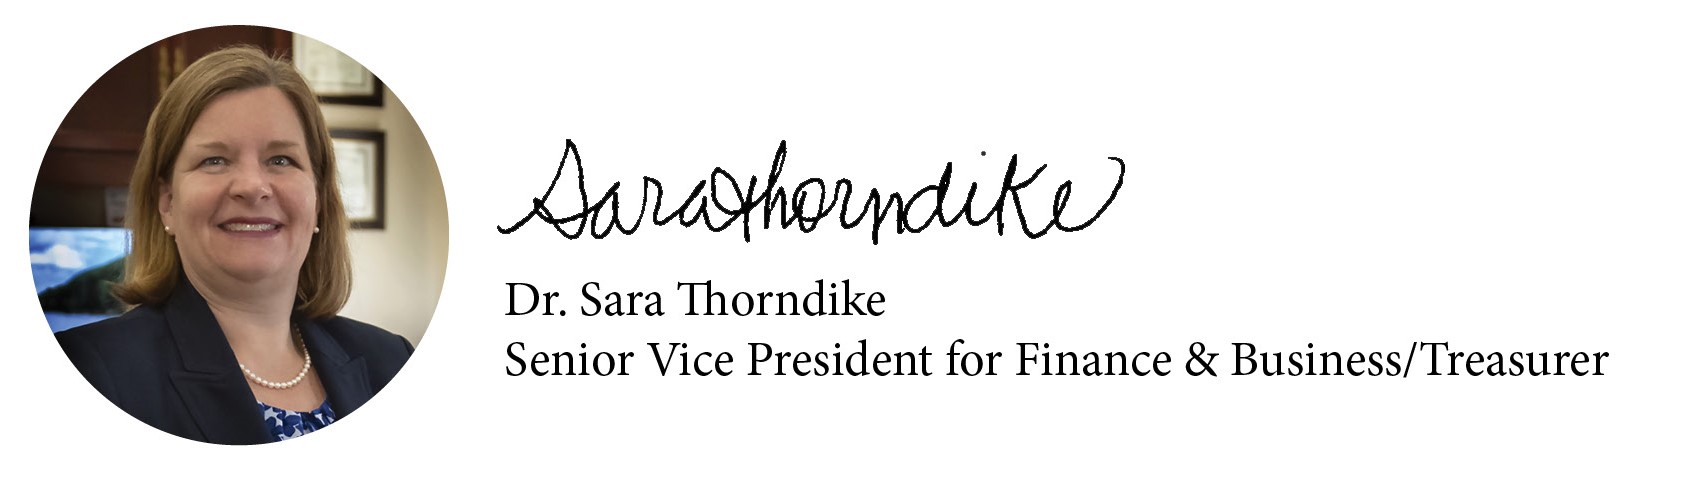 Sara Thorndike's Signature